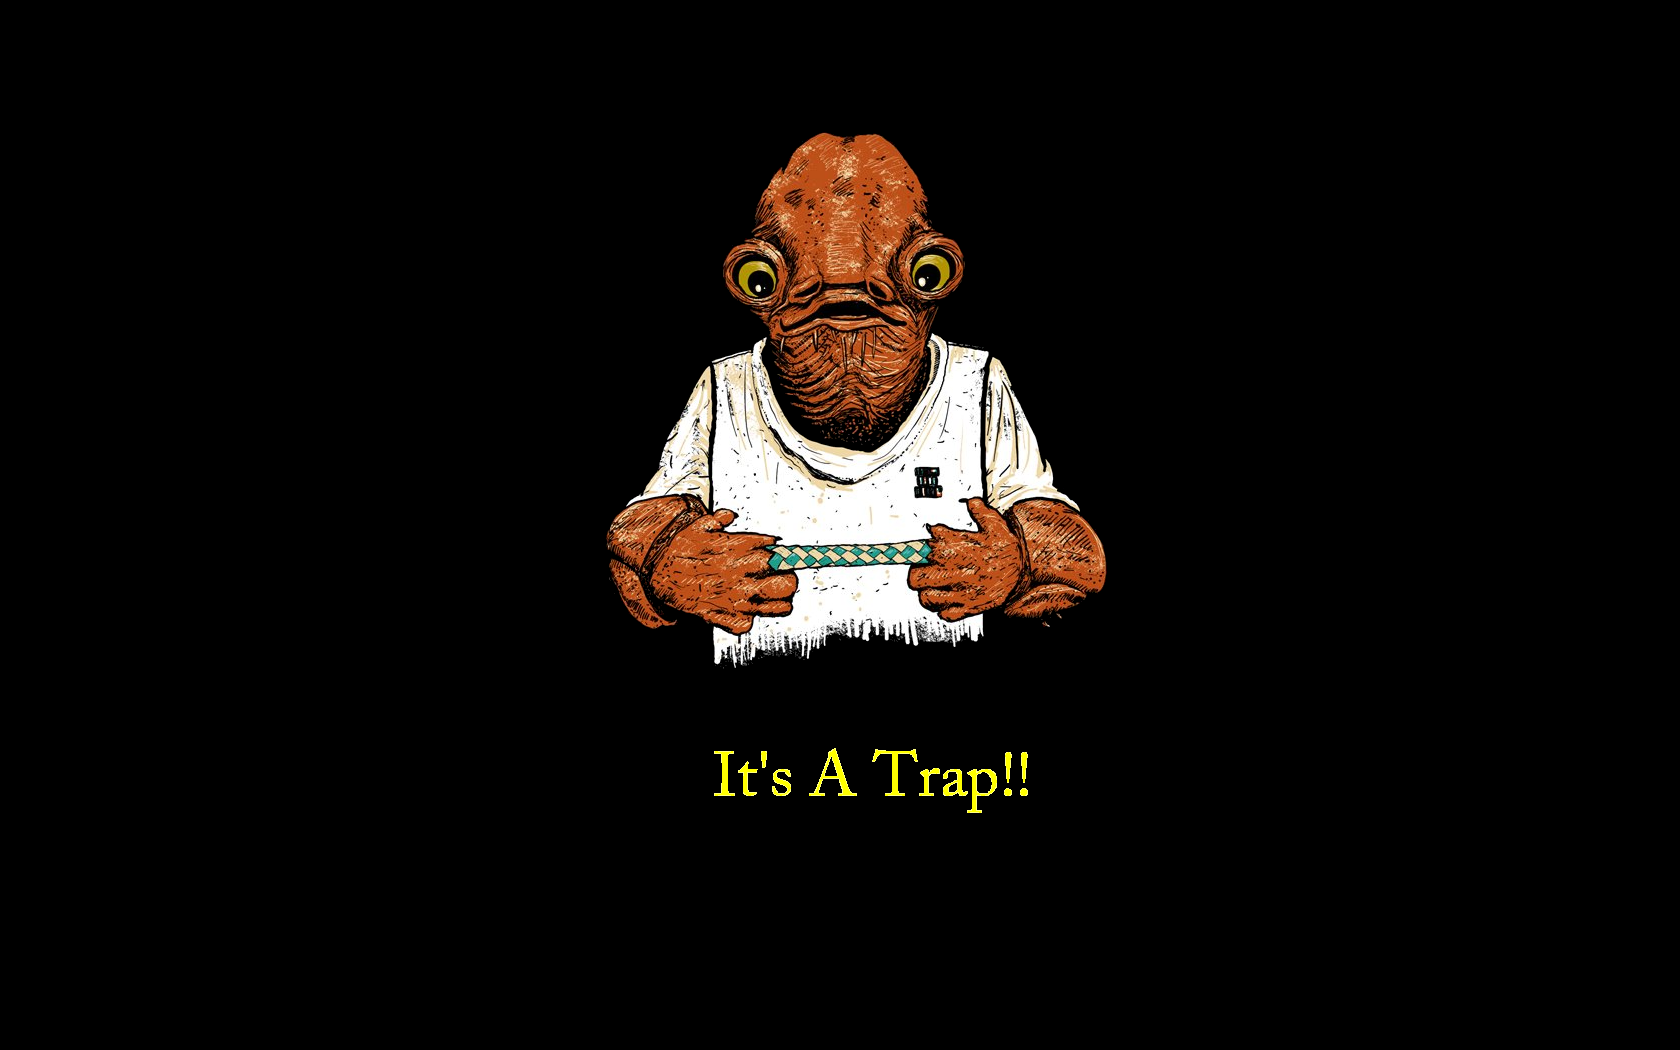 It's A Trap!! by Graystripe